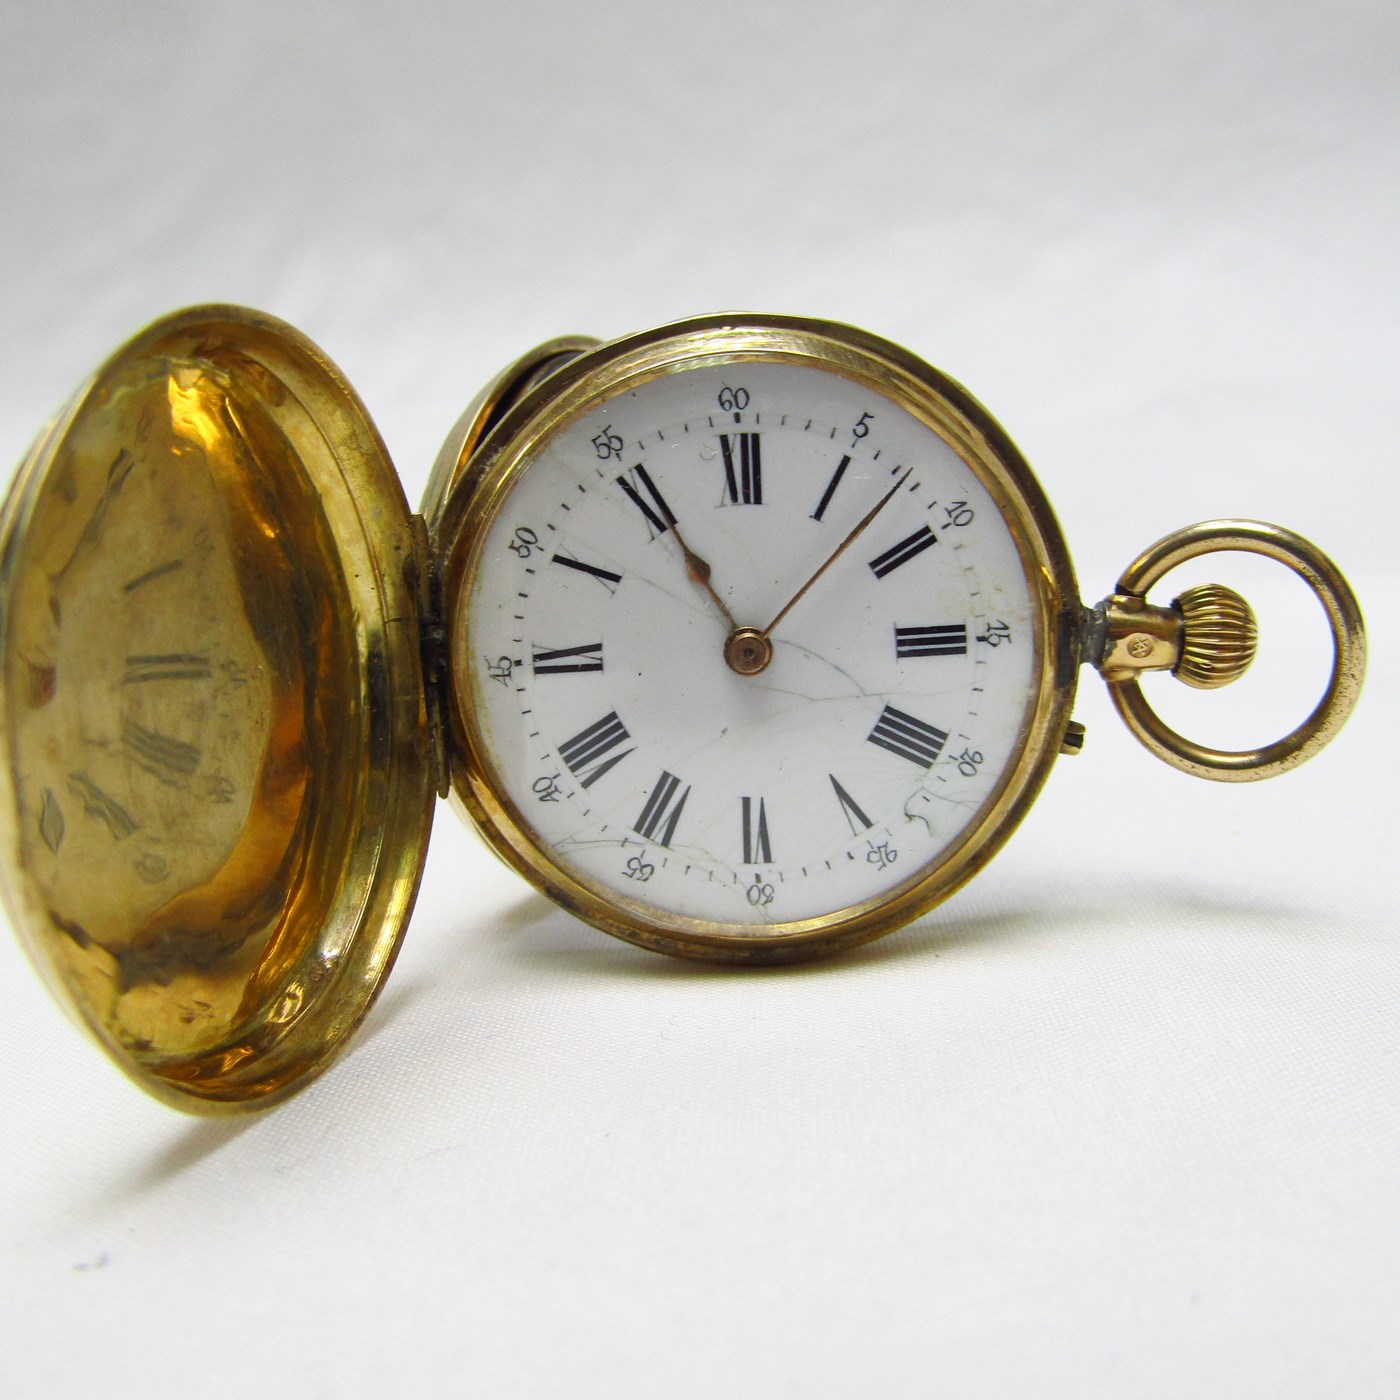 Schweizer Uhr zum Aufhängen von Saboneta und Remontoir. Schweiz, ca. 1900.